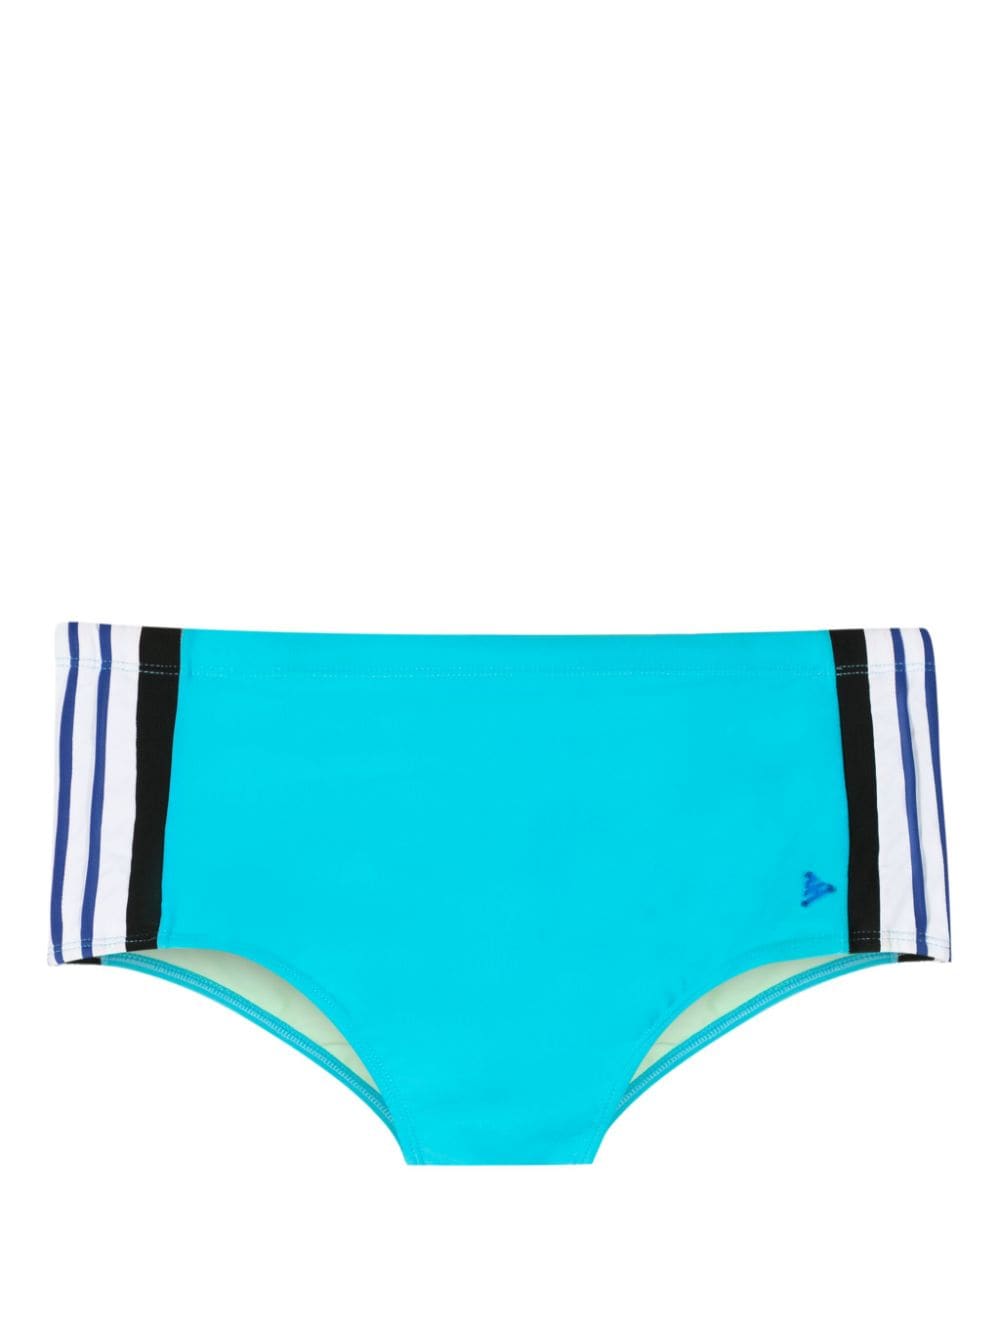 Amir Slama x Mahaslama logo-appliqué striped swim shorts - Blue von Amir Slama